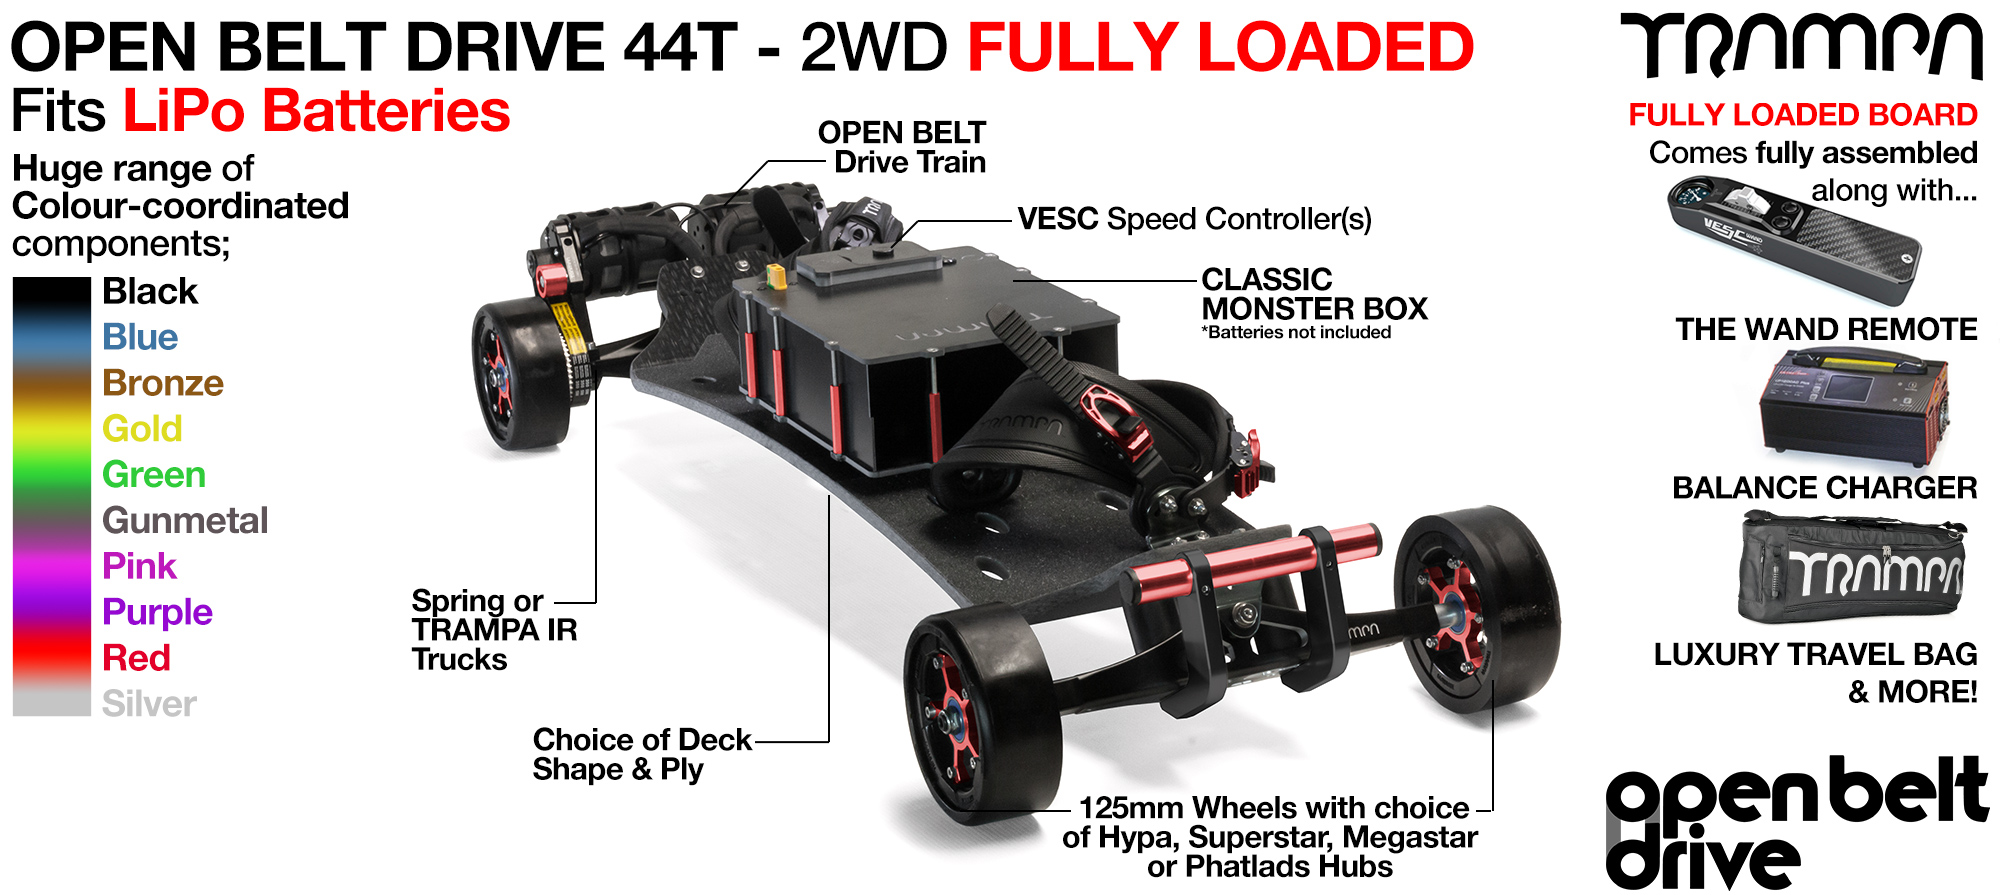 2WD 66T Open Belt Drive TRAMPA Electric Mountainboard with 125mm GUMMIES Giant Longboard Wheels & 44 Tooth Pulleys - FULLY LOADED Li-Po